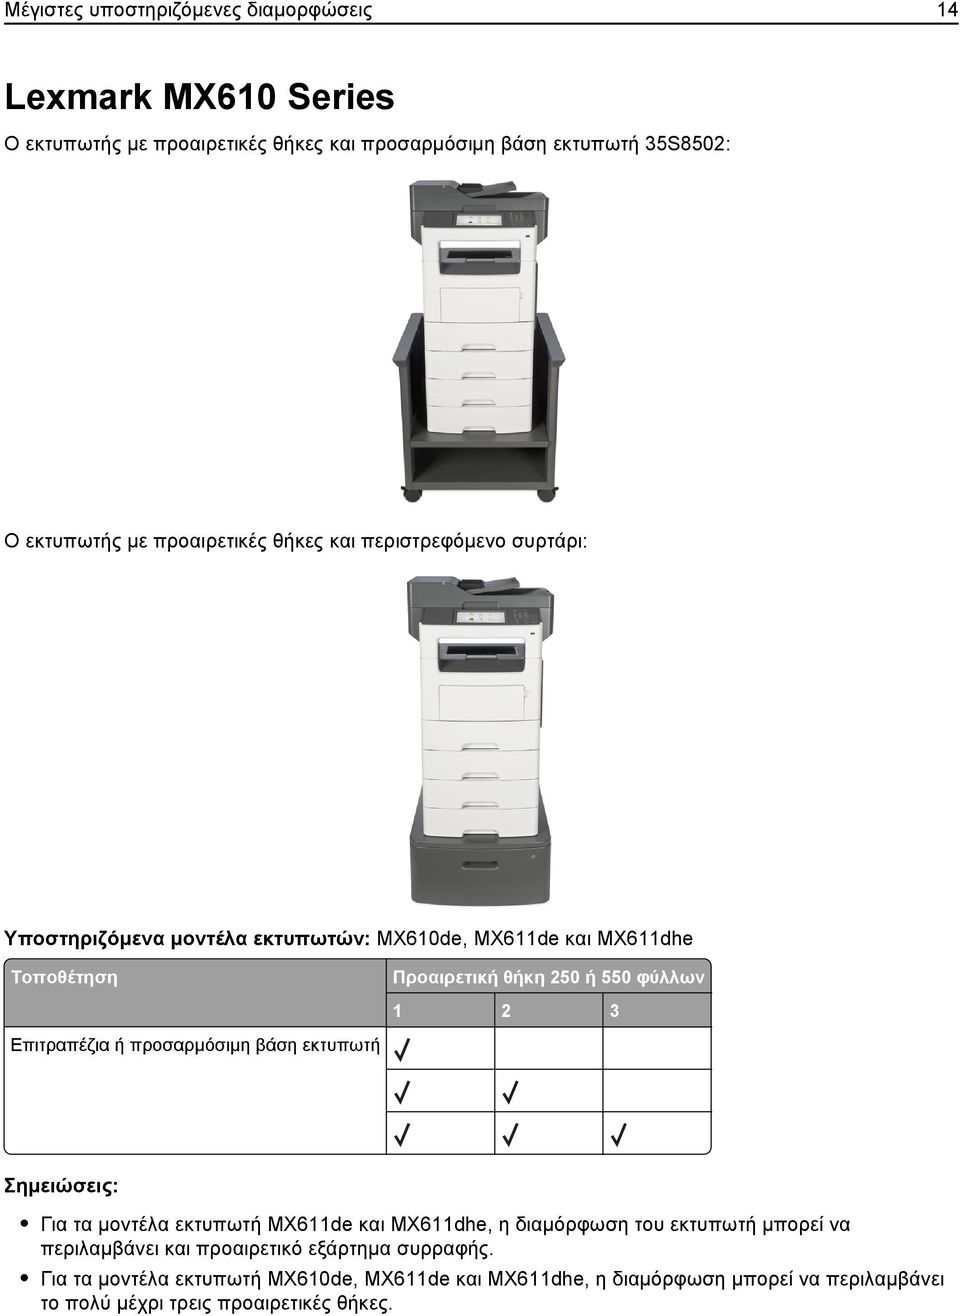 εκτυπωτή θήκη 250 ή 550 φύλλων 1 2 3 Σημειώσεις: Για τα μοντέλα εκτυπωτή MX611de και MX611dhe, η διαμόρφωση του εκτυπωτή μπορεί να περιλαμβάνει και